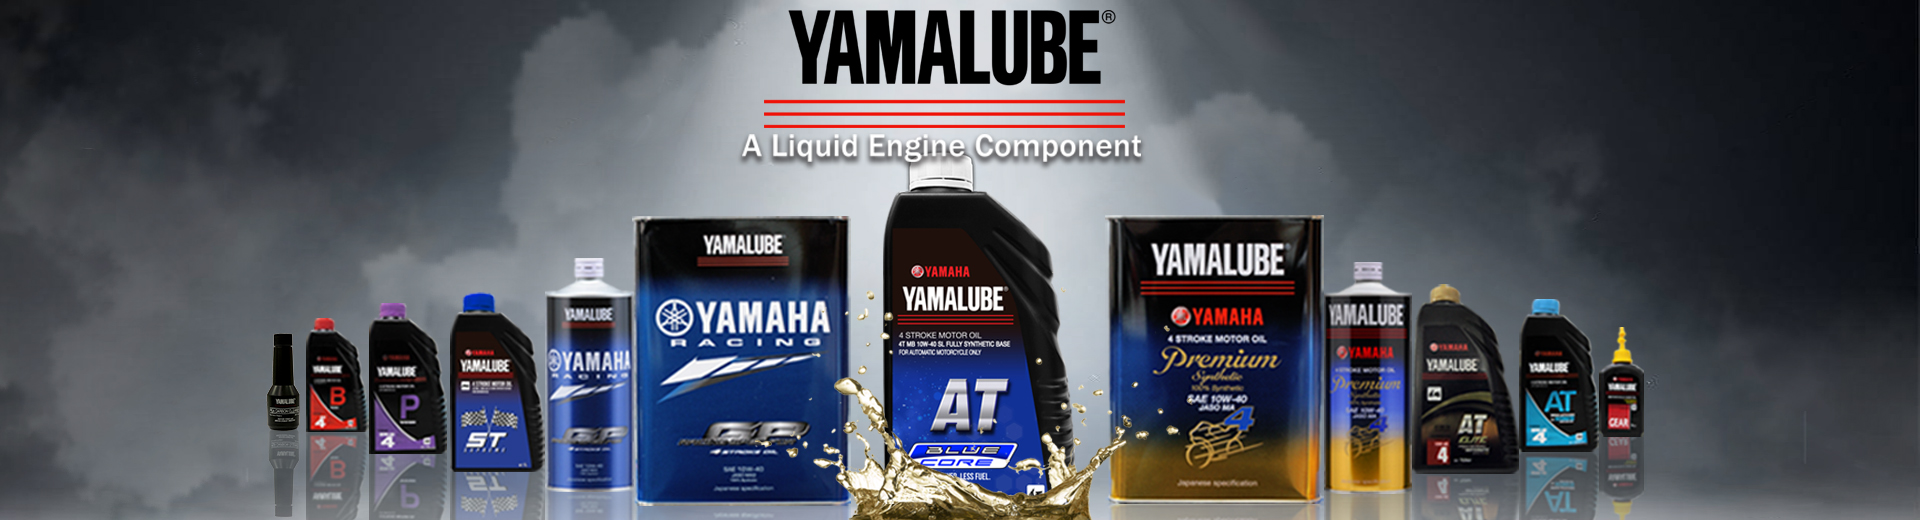 Yamalube - xe chính hãng dùng nhớt chính hãng - VnExpress